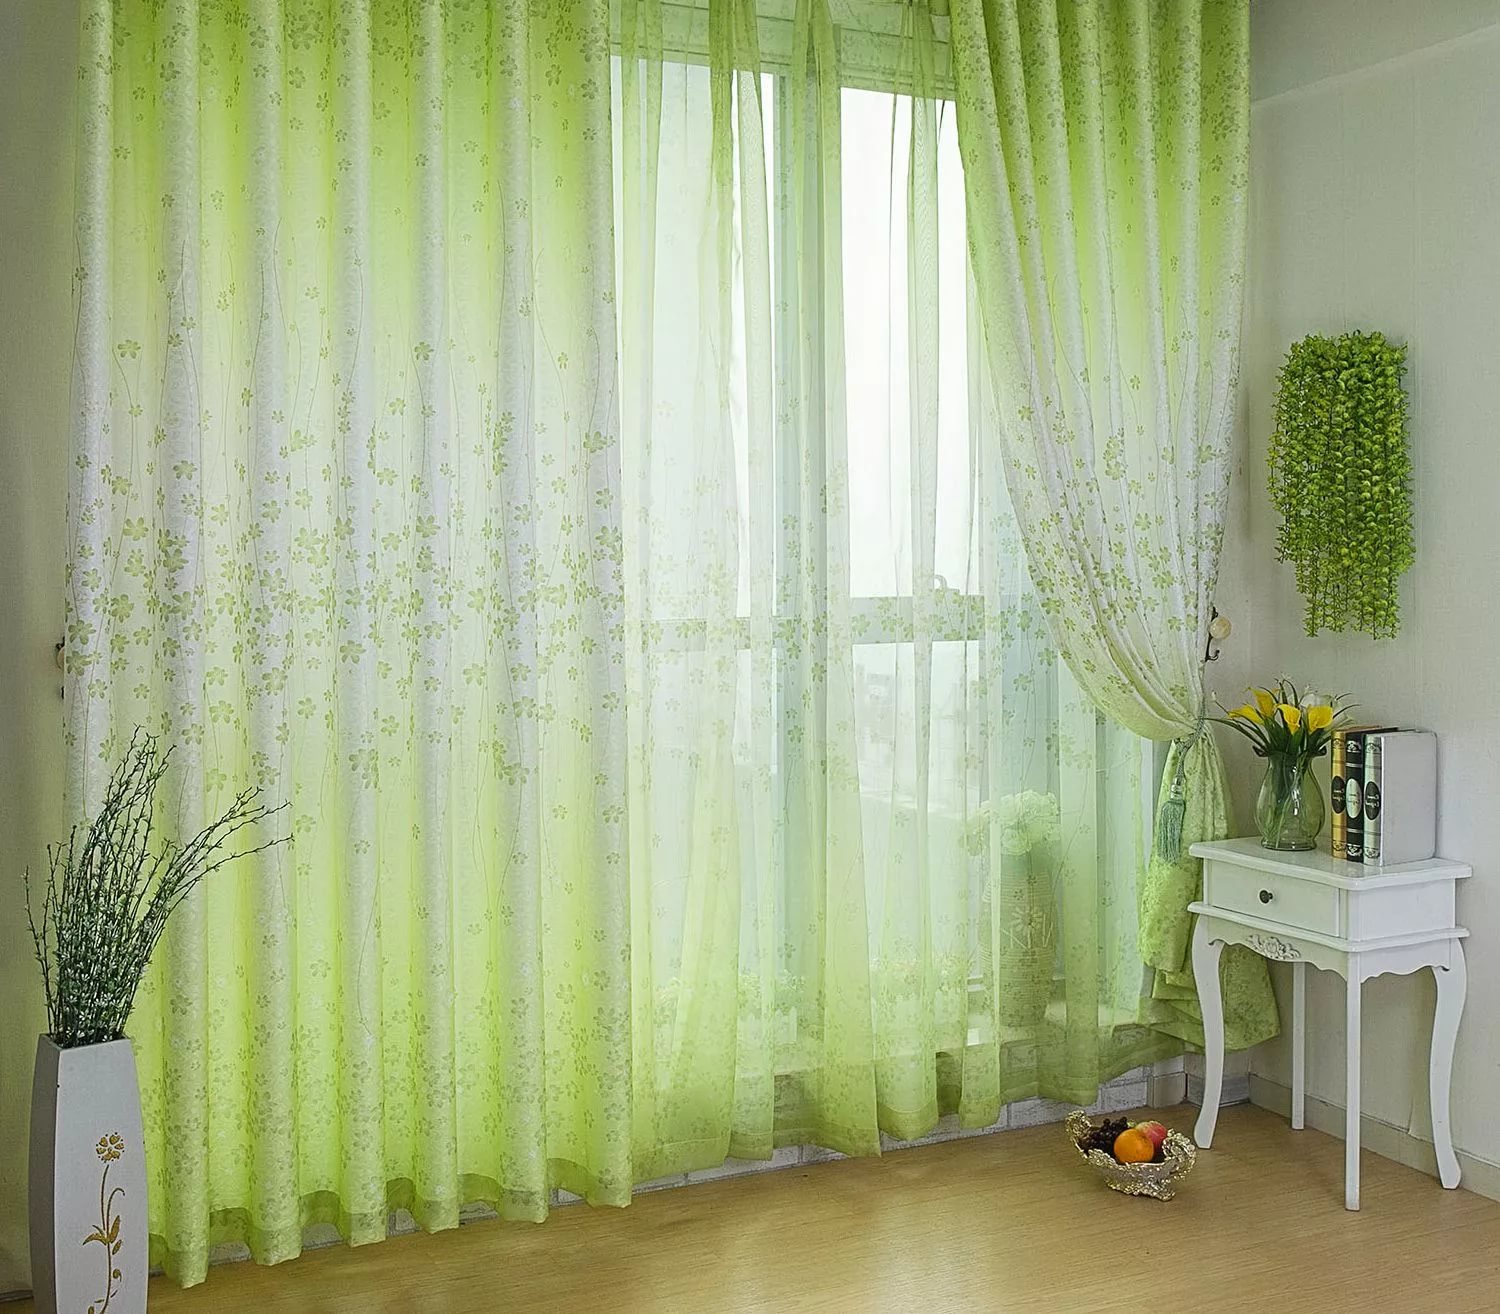 Fenêtre du salon avec des rideaux transparents verdâtres